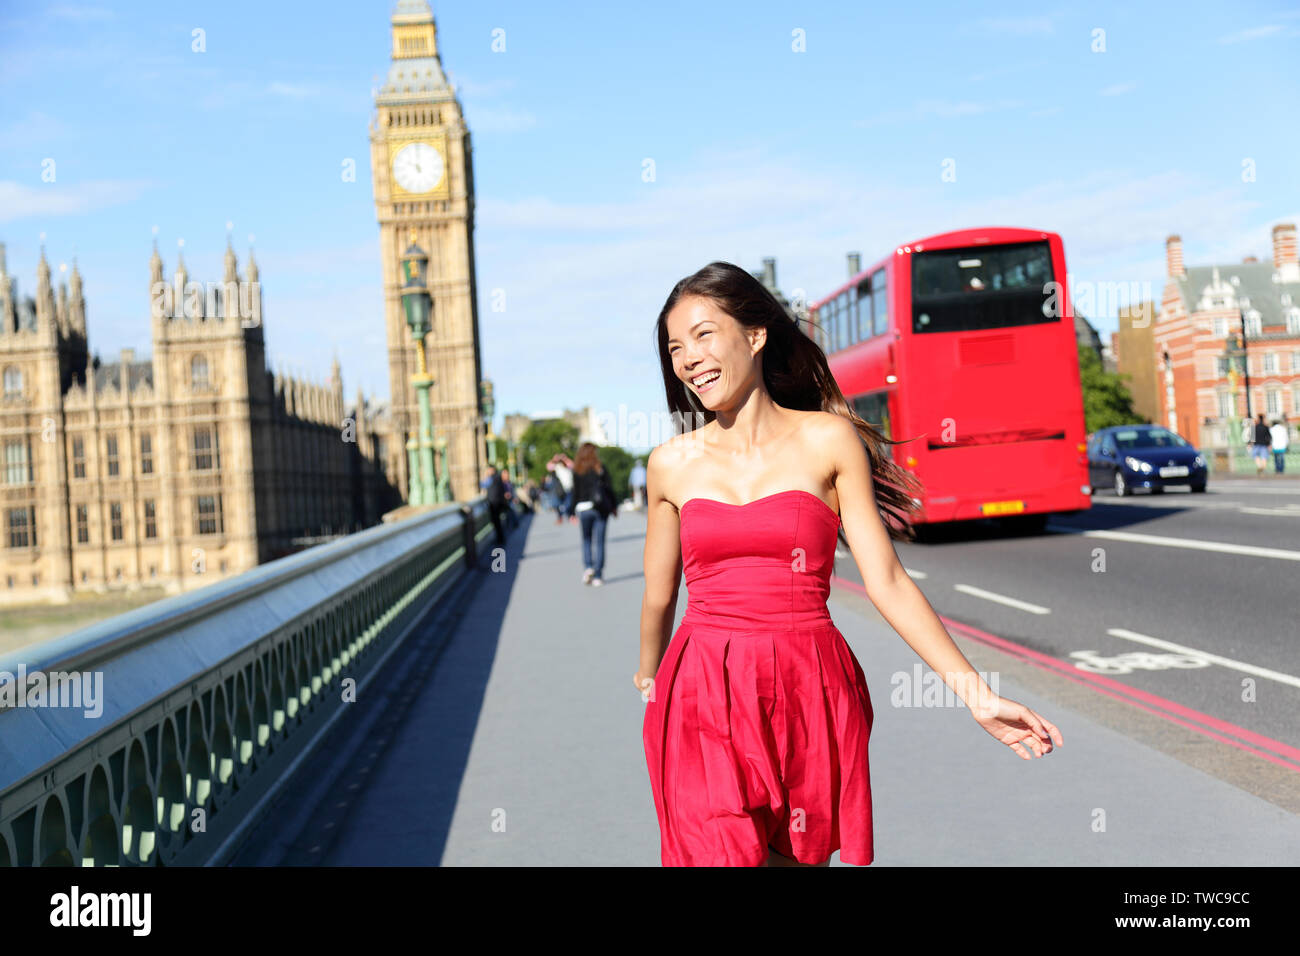 В лондоне жена жила замкнуто. Девушка в Лондоне. Девочка на фоне Лондона. Брюнетка в Лондоне. Женщина на фоне Биг Бена.